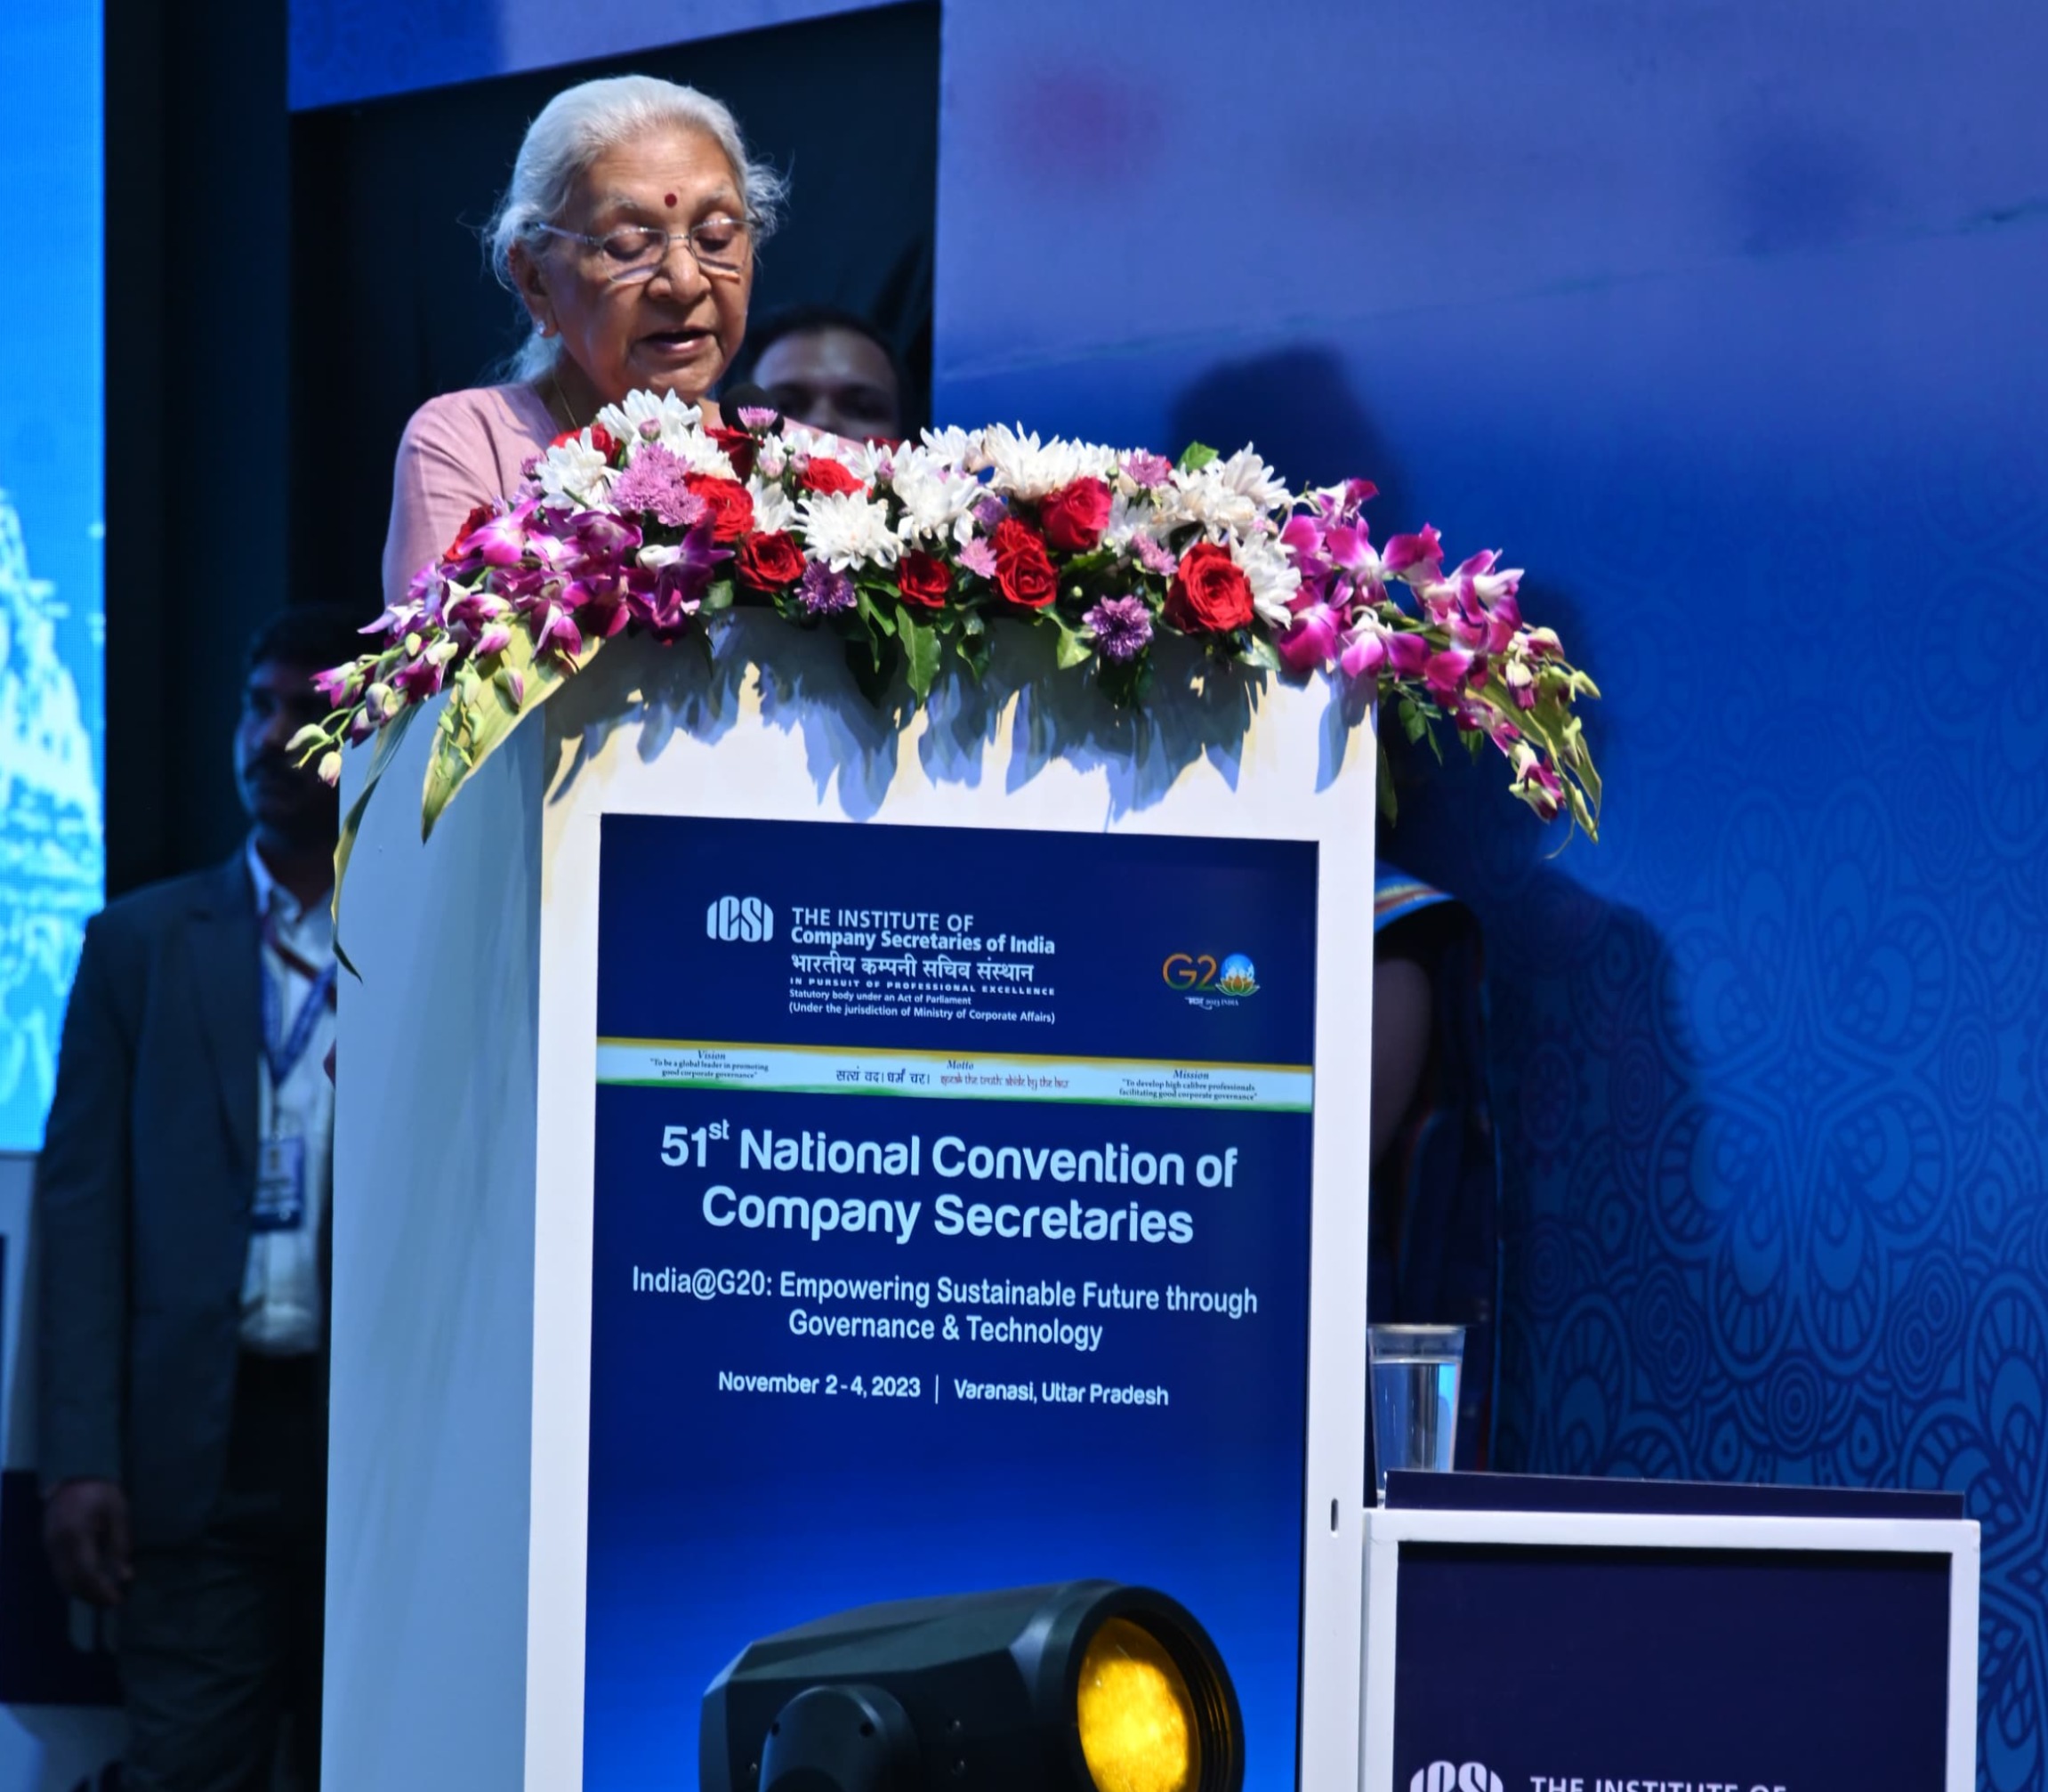 उपराष्ट्रपति श्री जगदीप धनखड़ ने आज वाराणसी में  दीनदयाल हस्तकला संकुल, ट्रेड सेंटर में 51वें राष्ट्रीय कंपनी सचिव सम्मेलन को संबोधित किया।